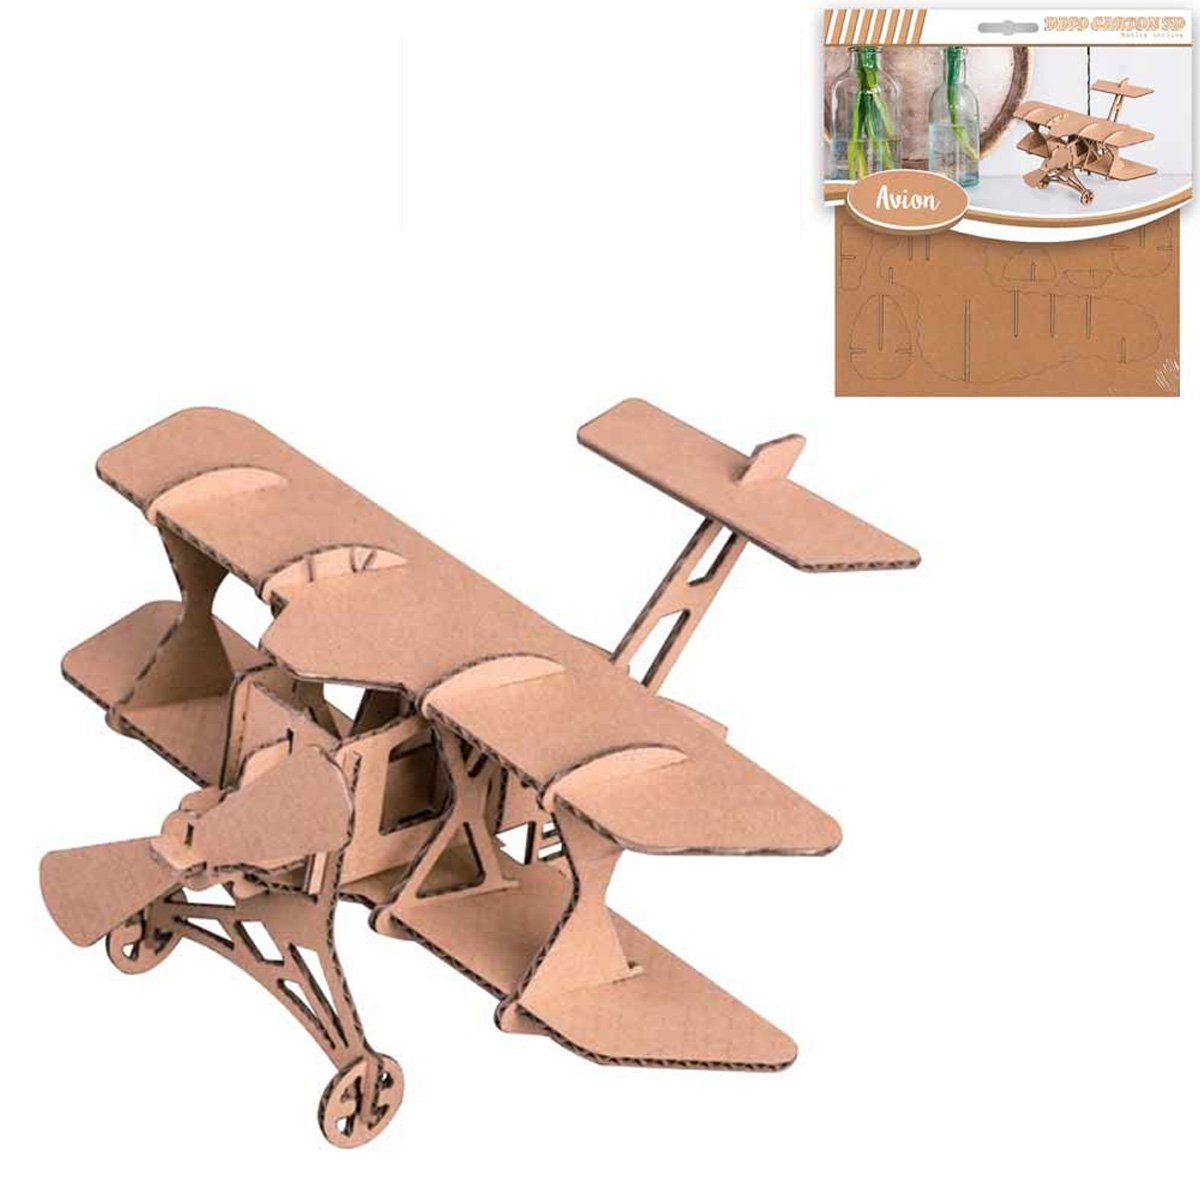 Figurine carton 3D \'Avion\' - planches 165x175 cm - [Q4559]